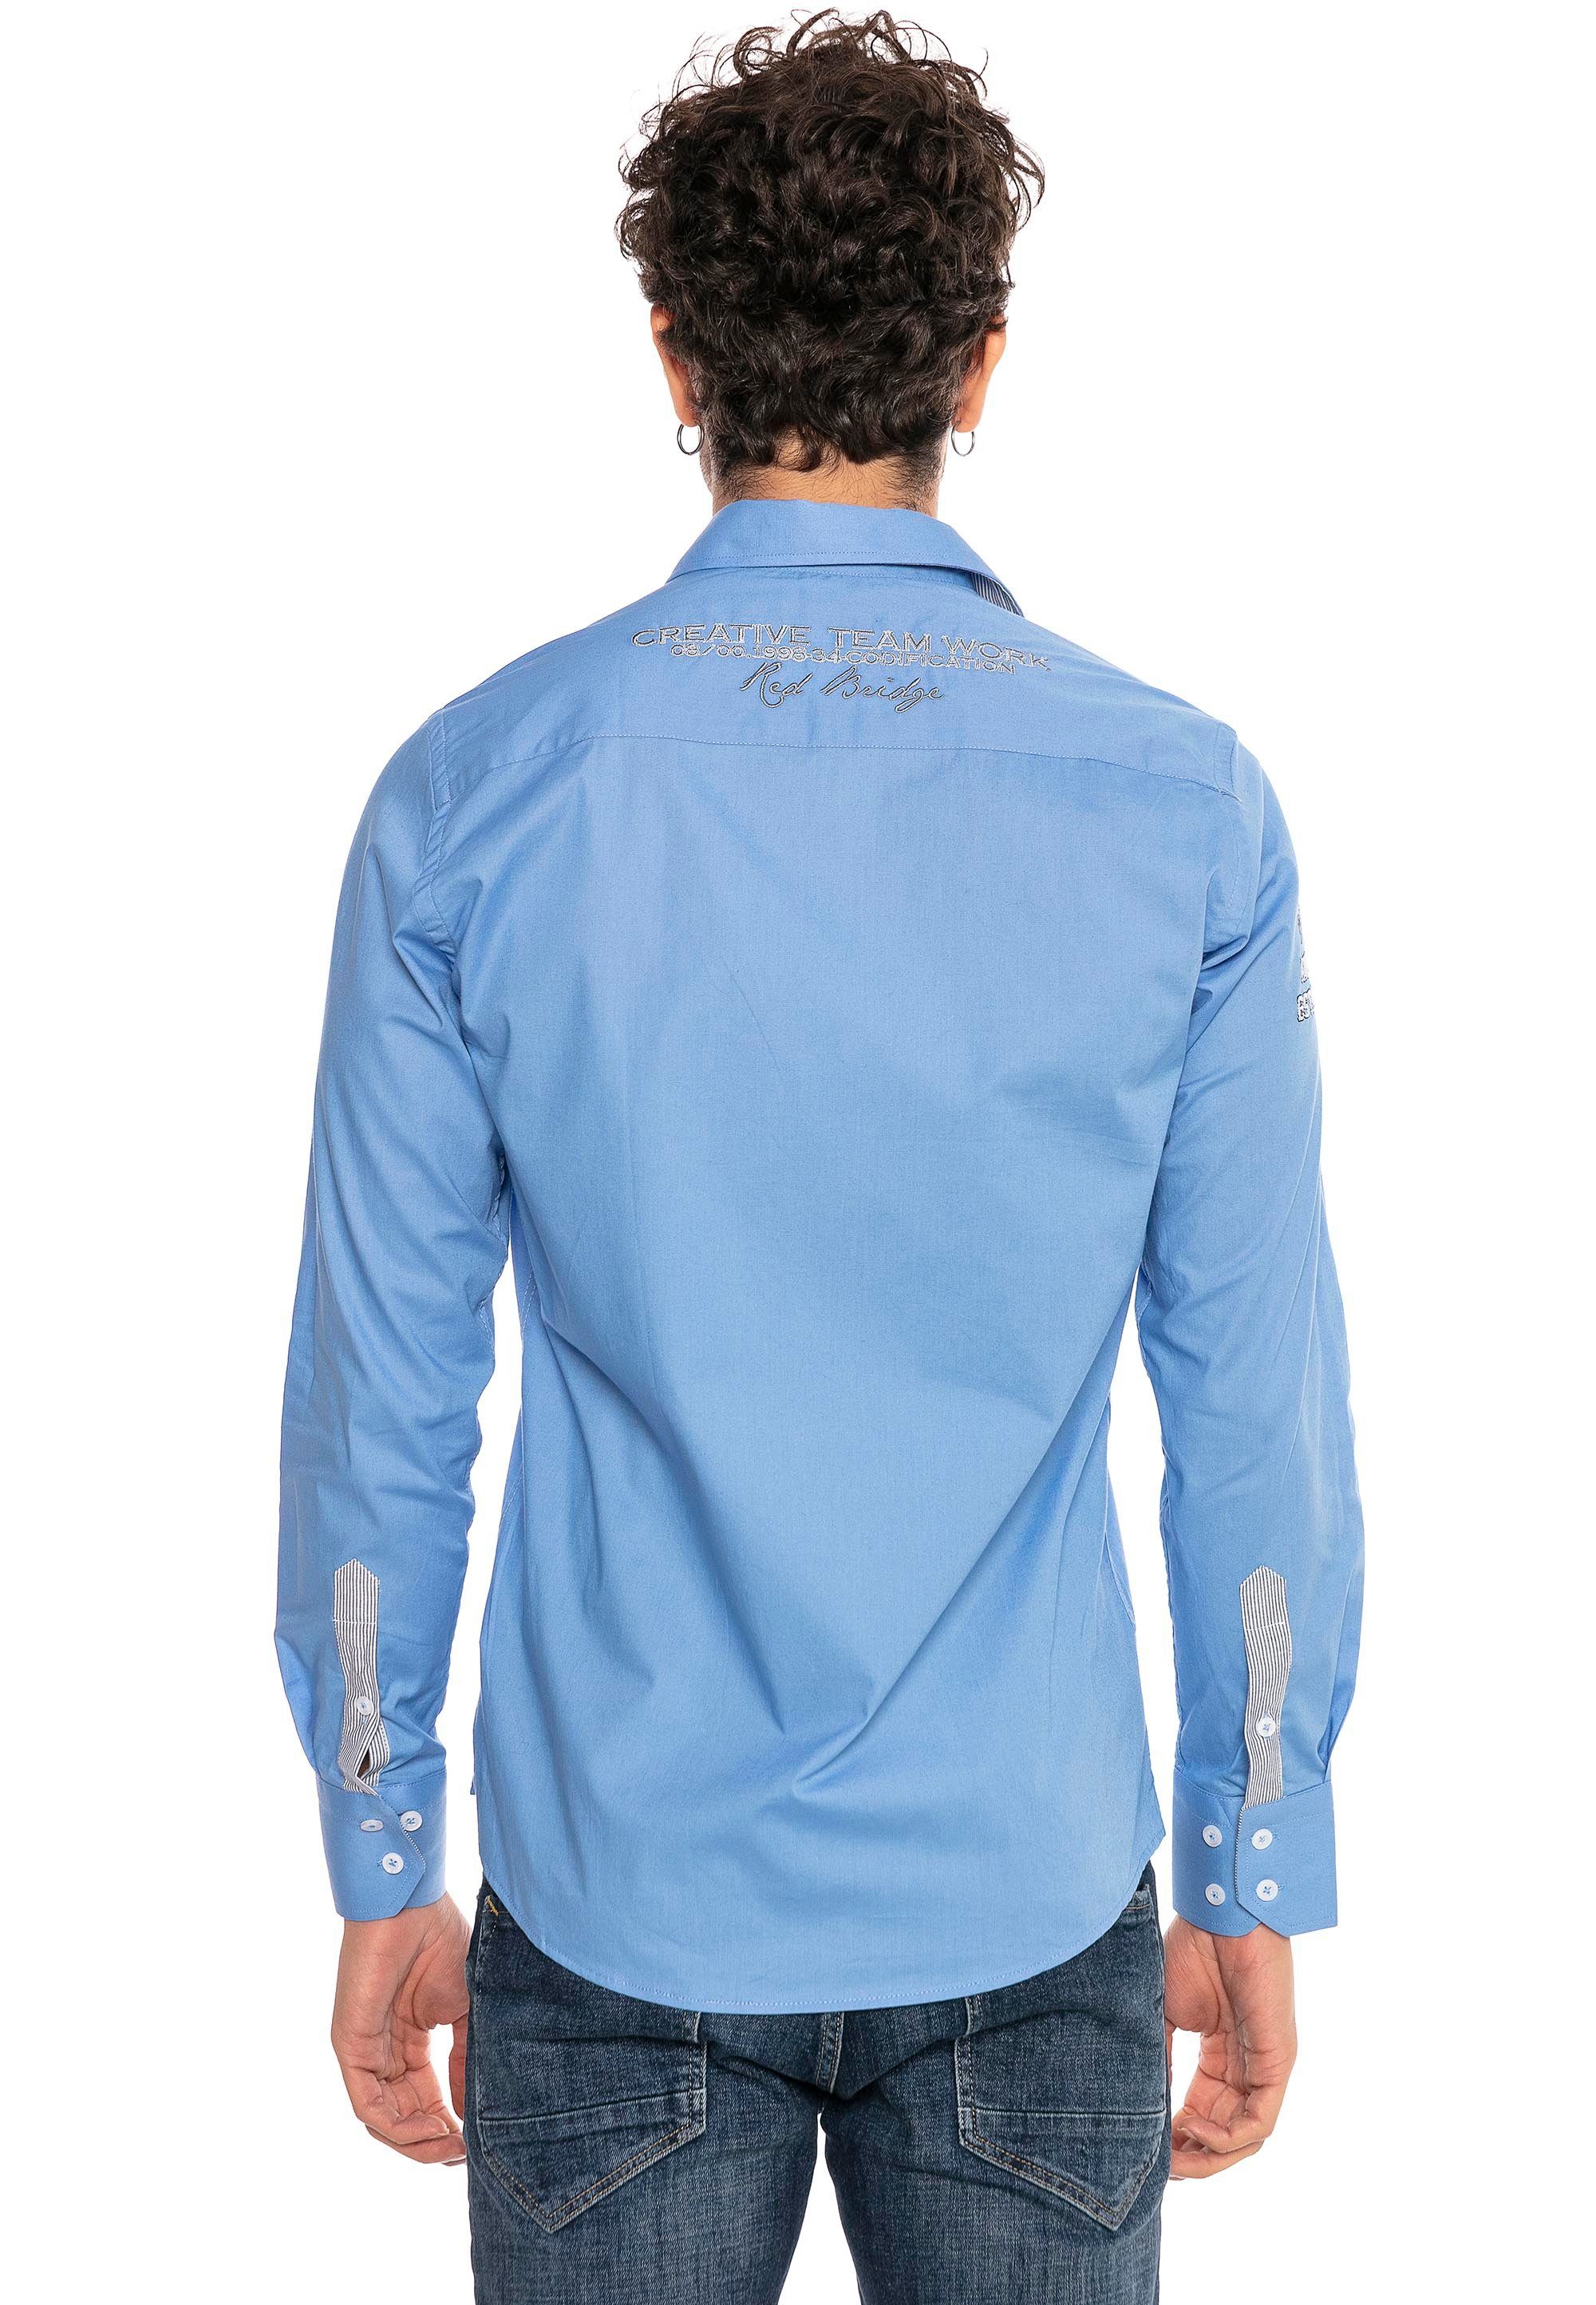 Stickerei im Slim City Fit-Schnitt Langarmhemd RedBridge Jersey mit blau-blau